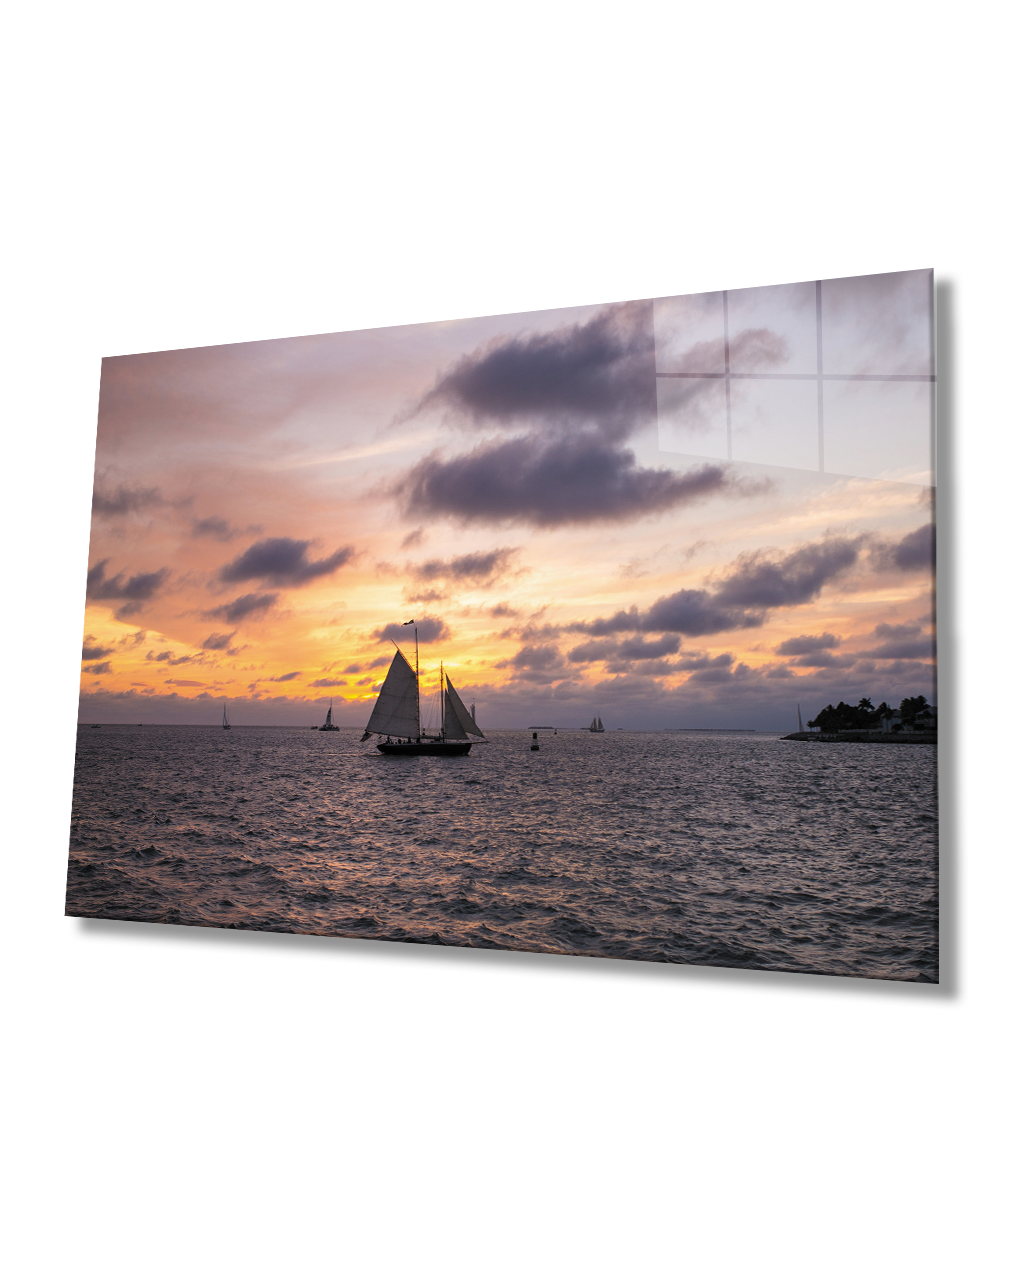 Gün Batımı Deniz Yelkenli Cam Tablo  4mm Dayanıklı Temperli Cam Sunset Sea Sail Glass Table 4mm Durable Tempered Glass